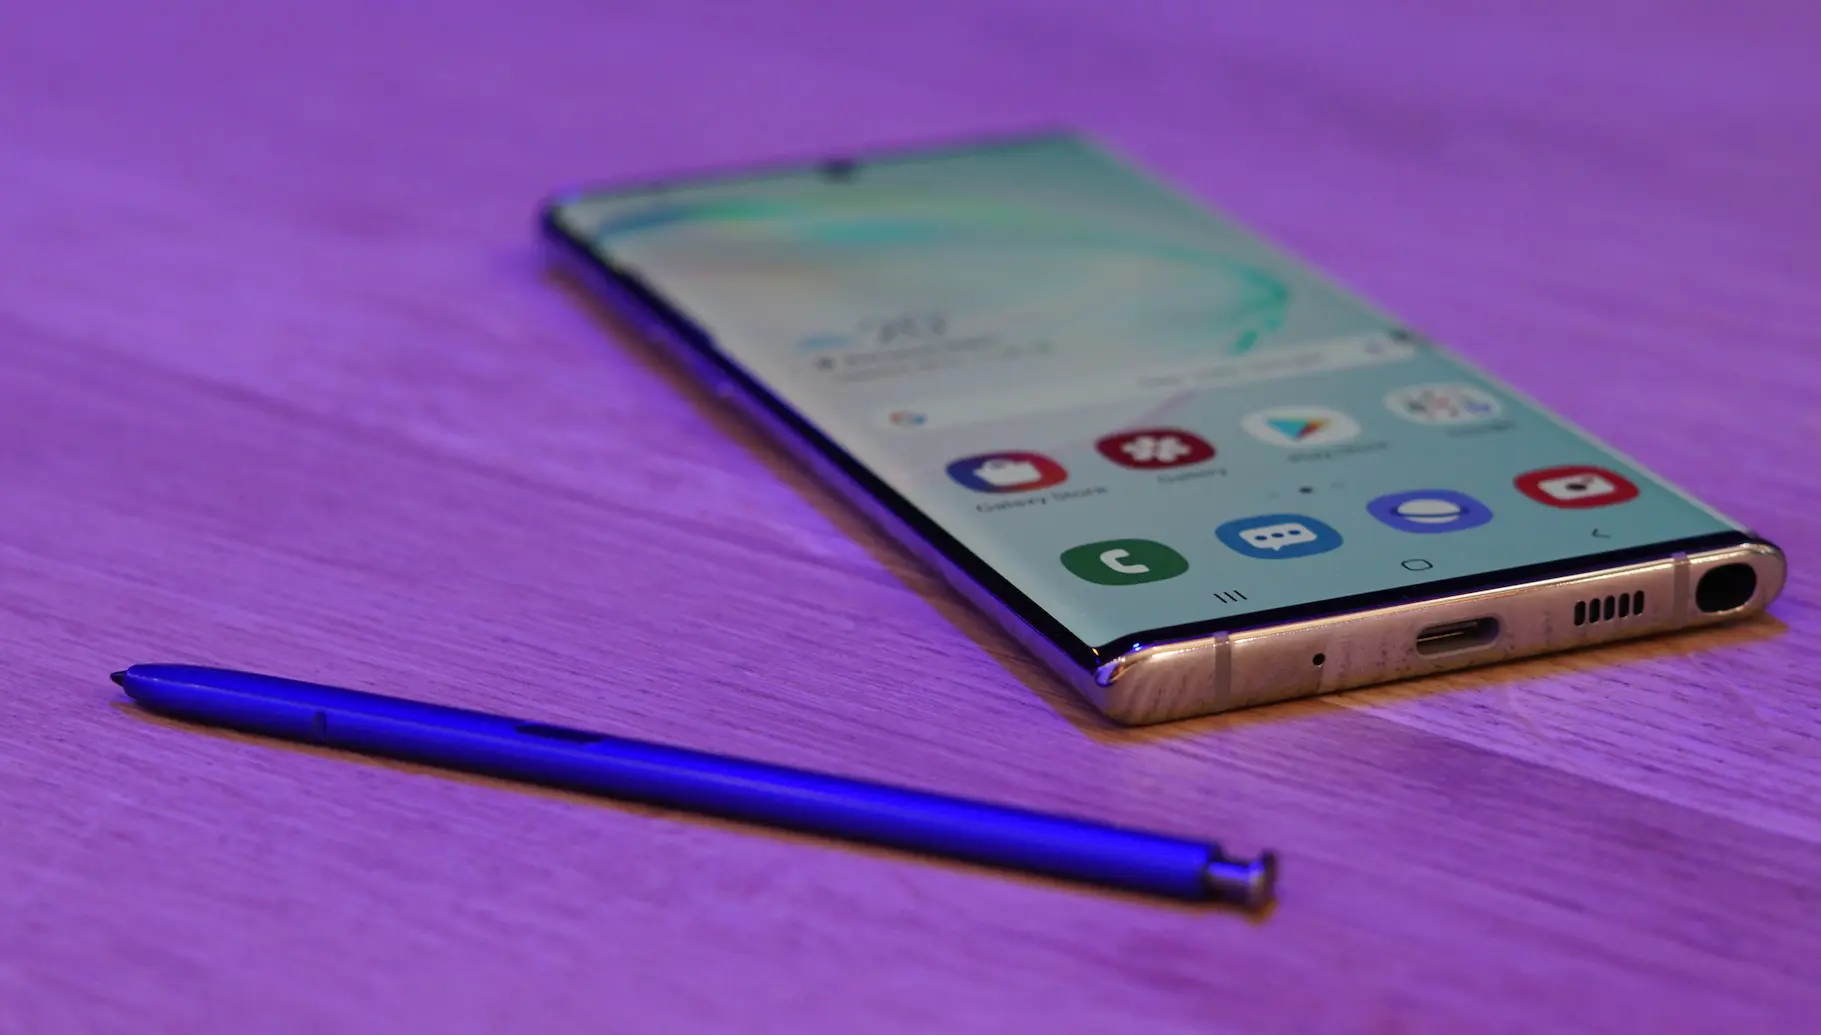 Samsung explica porque no hay un jack de 3.5 mm en el Galaxy Note 10